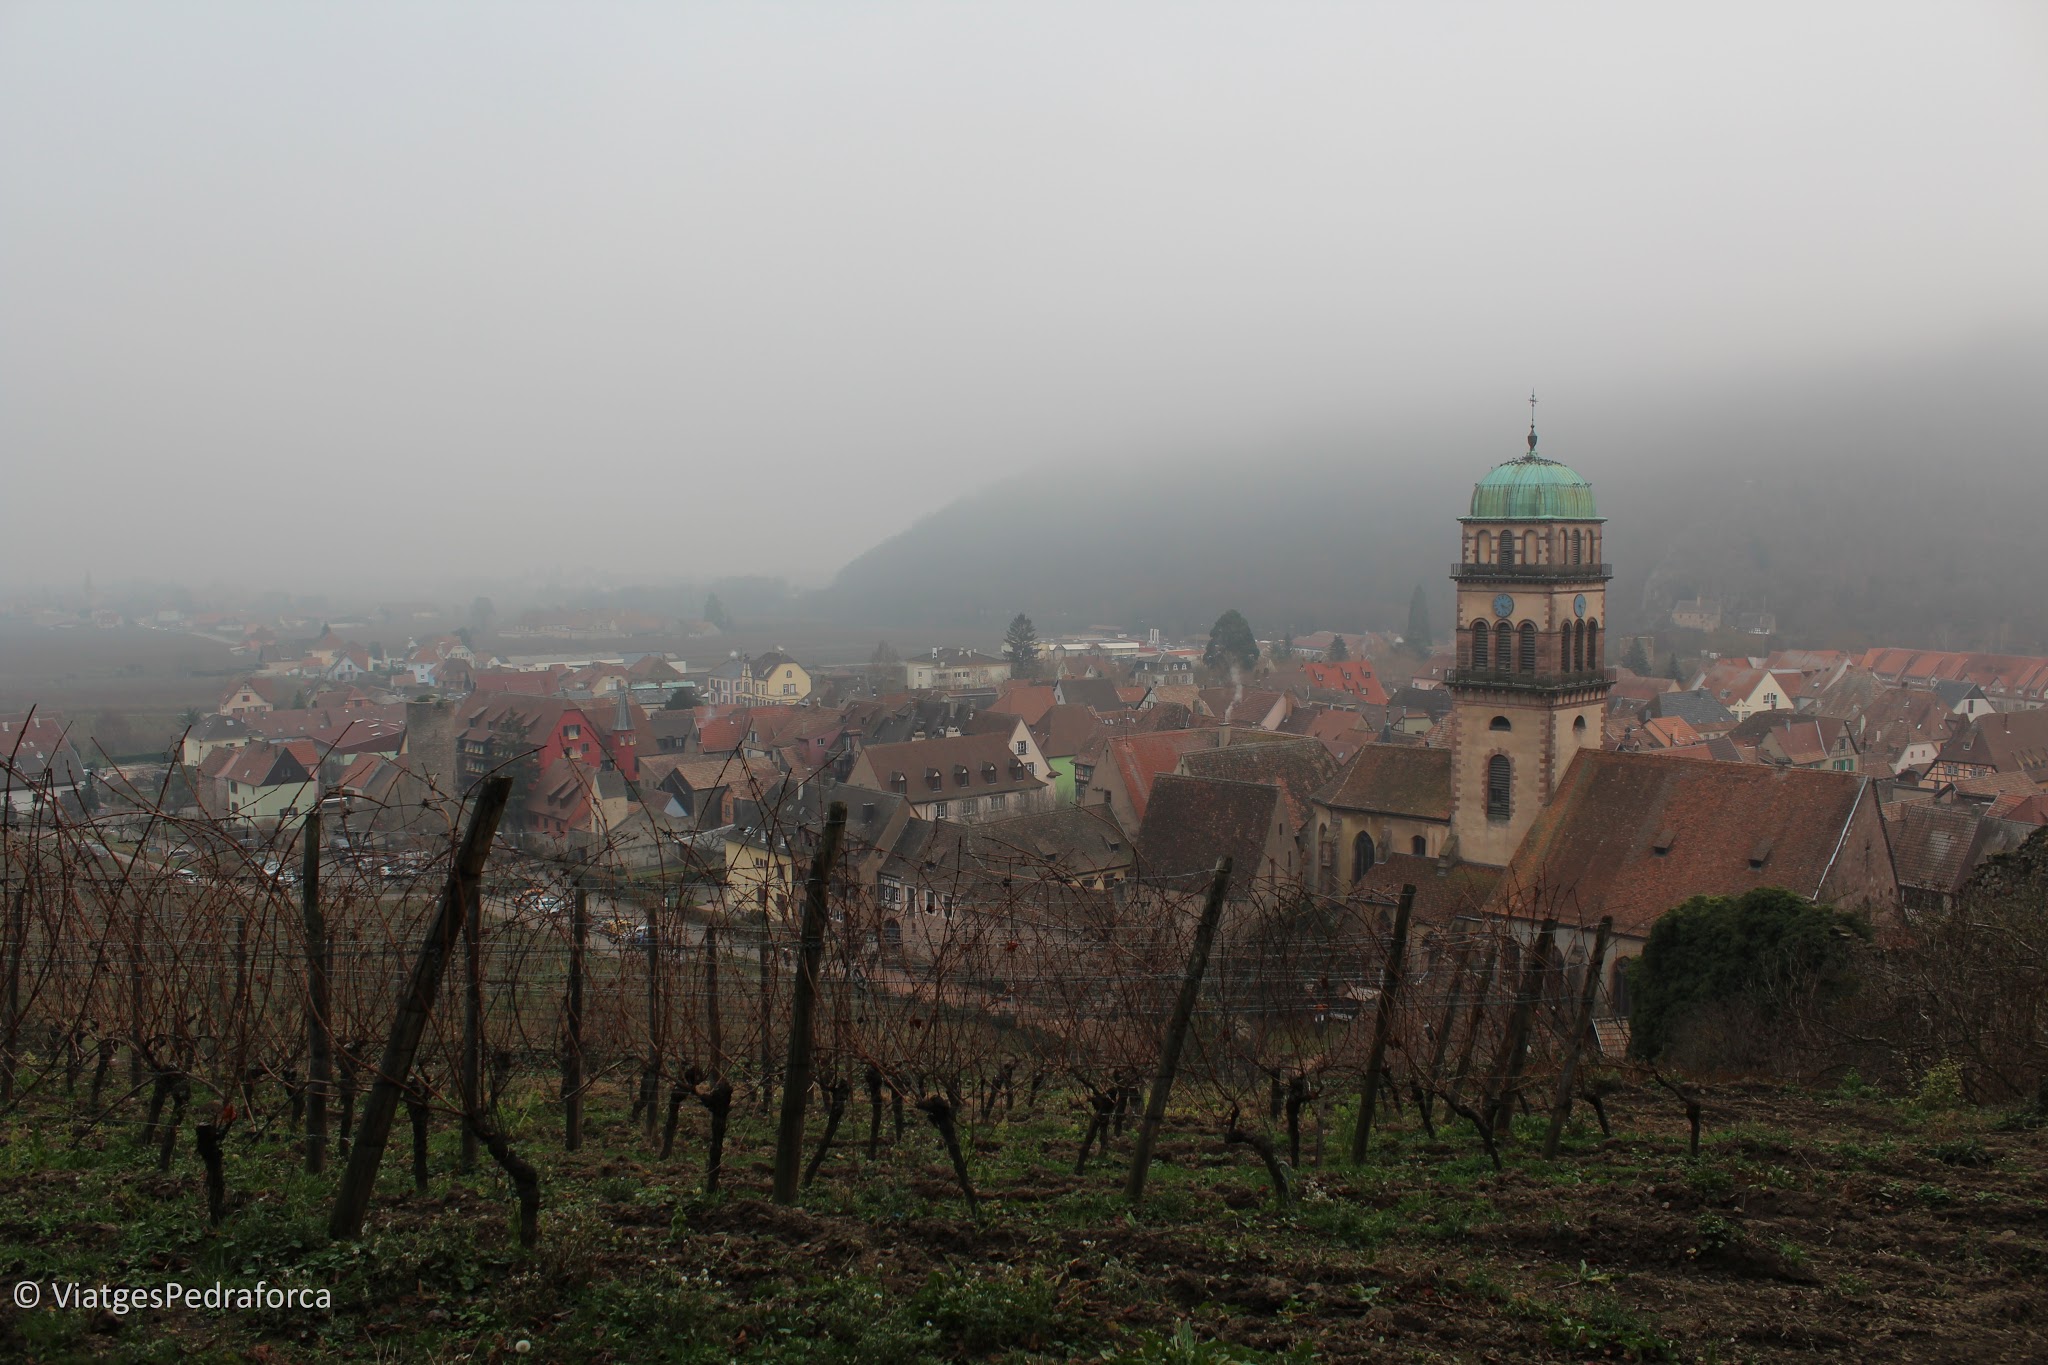 Els pobles de la ruta del vi de l'Alsàcia, els pobles més bonics de França, mercats de Nadal